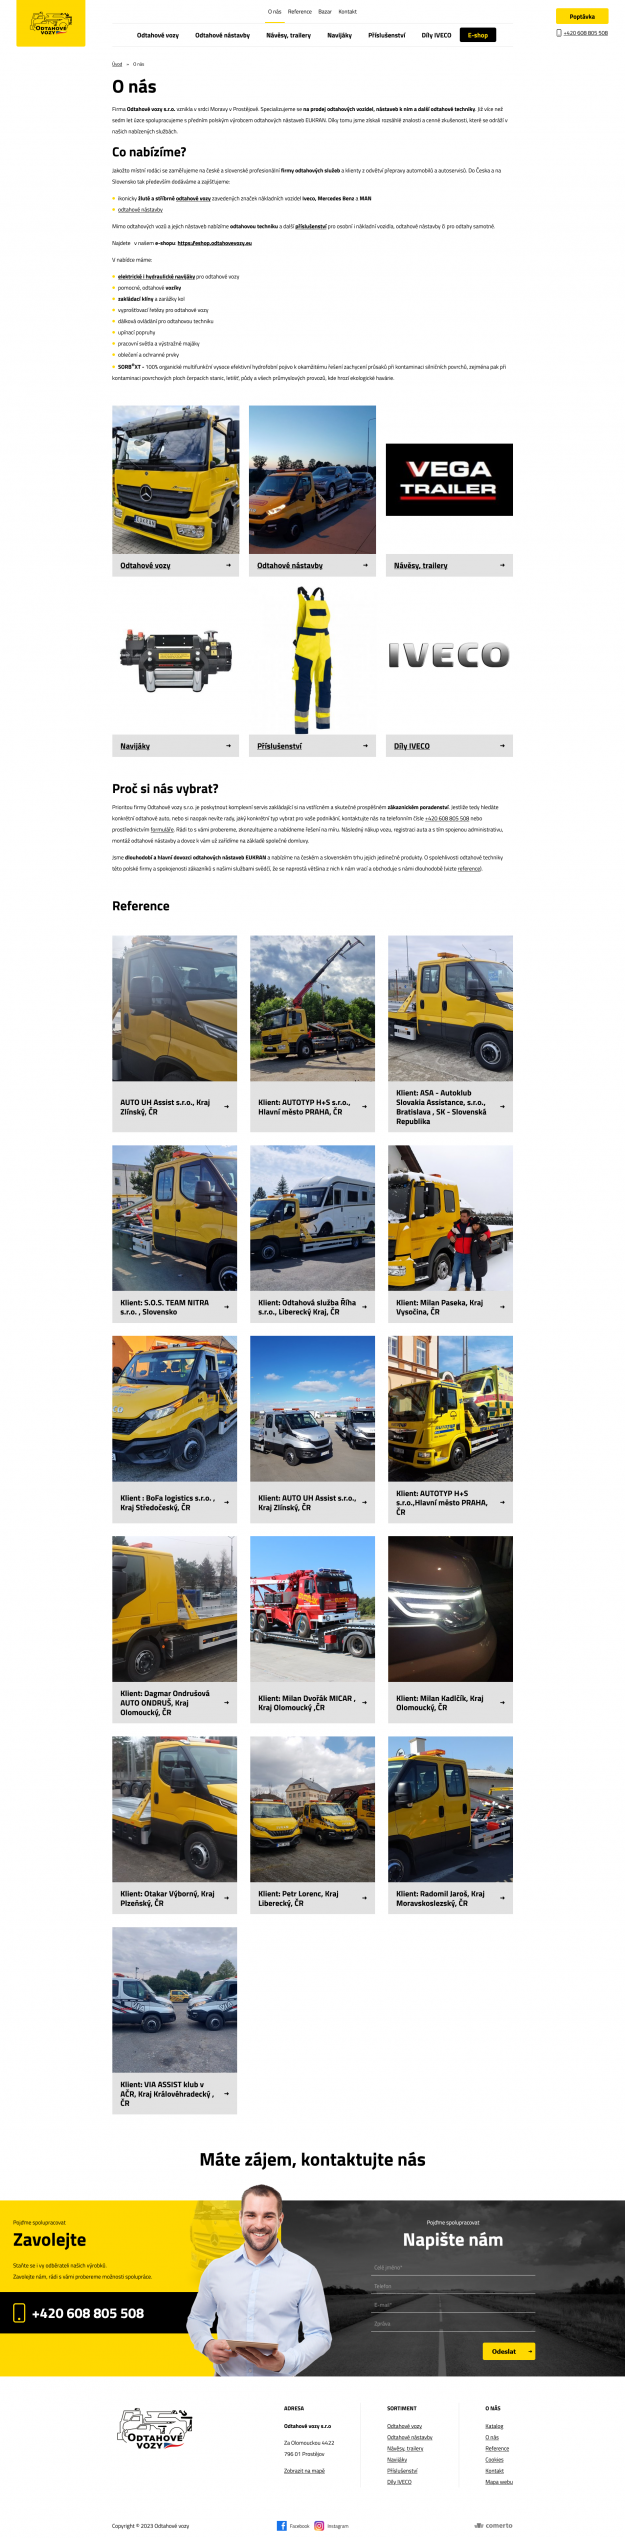 Tvorba nového webu pro Odtahové vozy - Screenshot